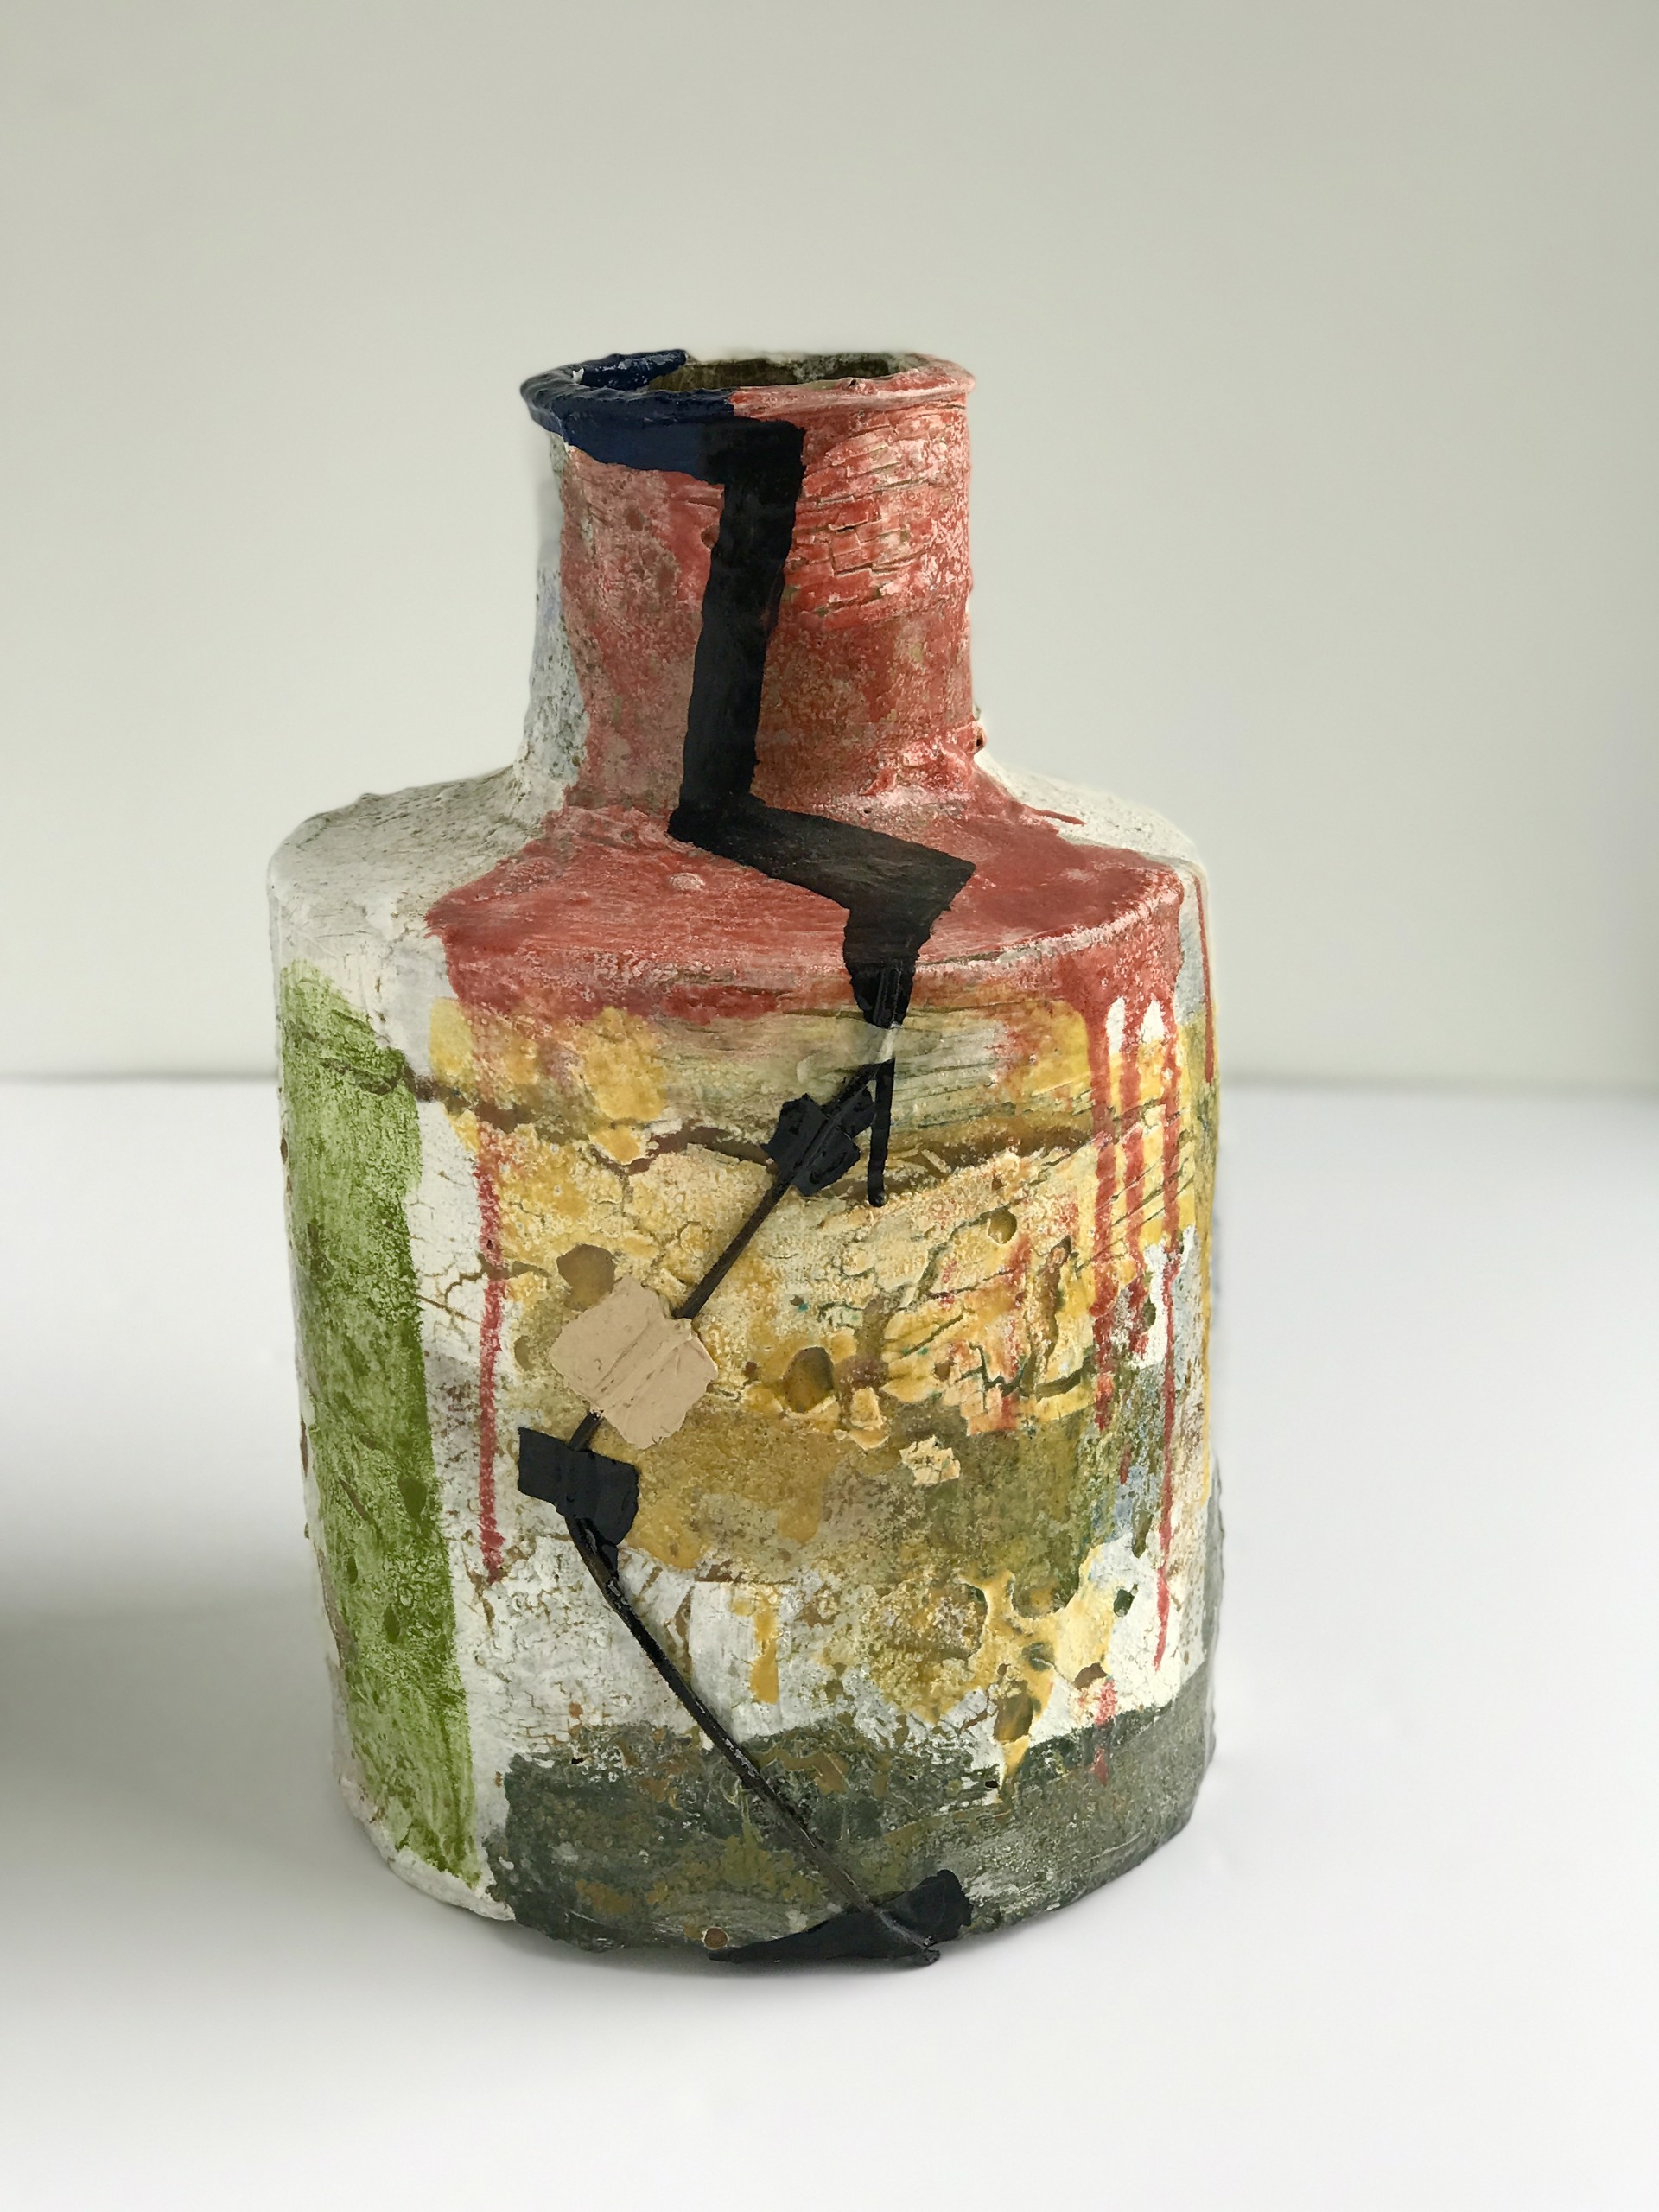 Cord (jar) by Jim Shrosbree